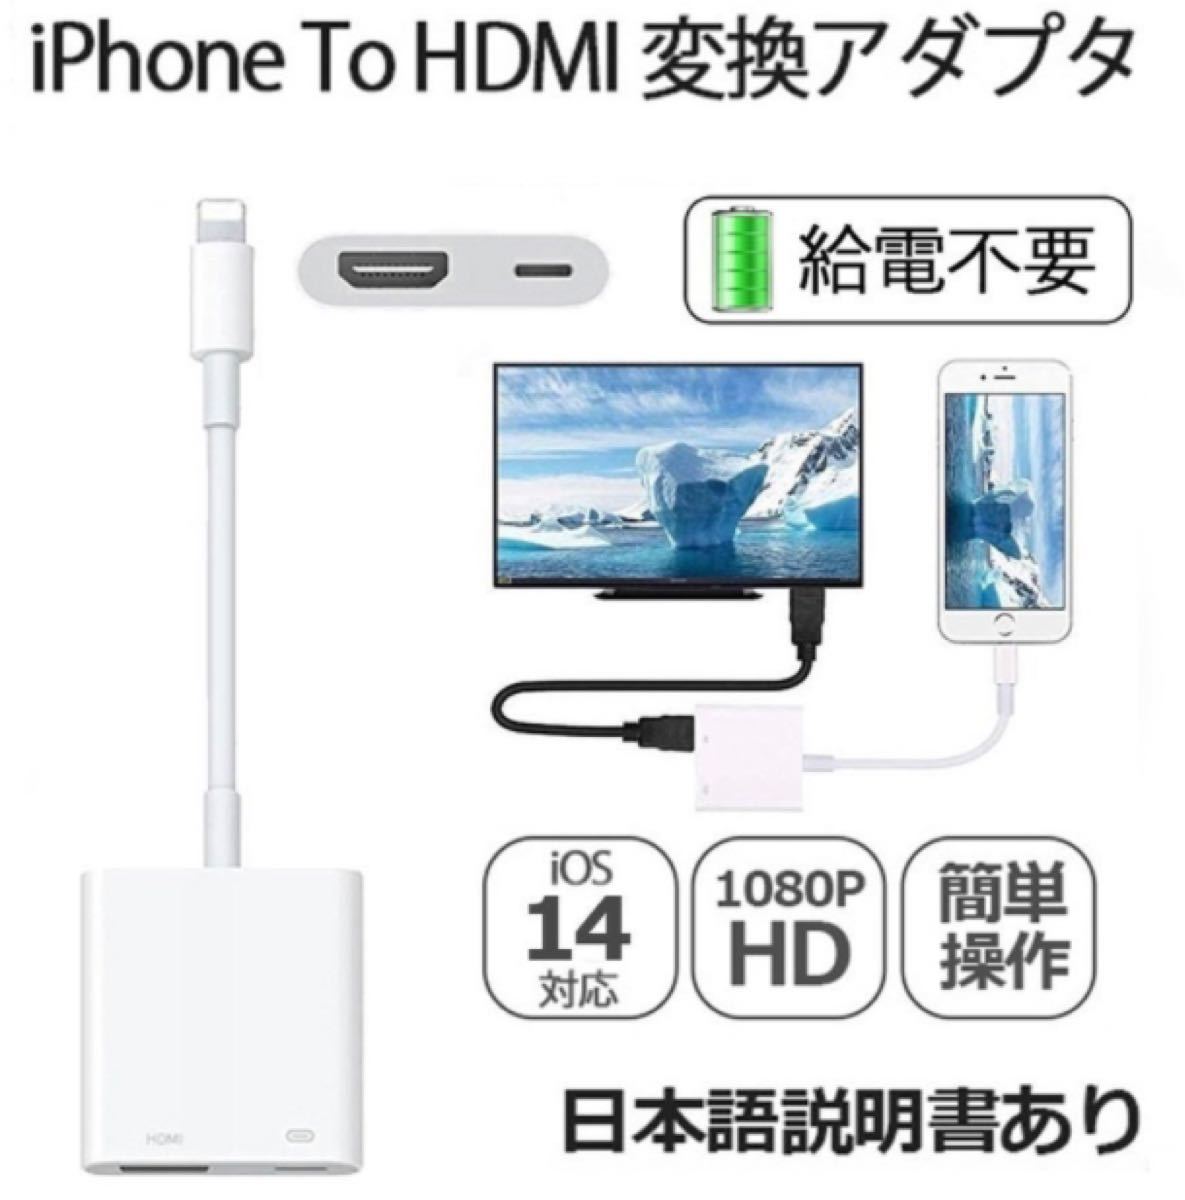 給電不要 Lightning Digital アダプタ iPhone HDMI 変換アダプタ 高品質 音声同期出力 IOS14対応